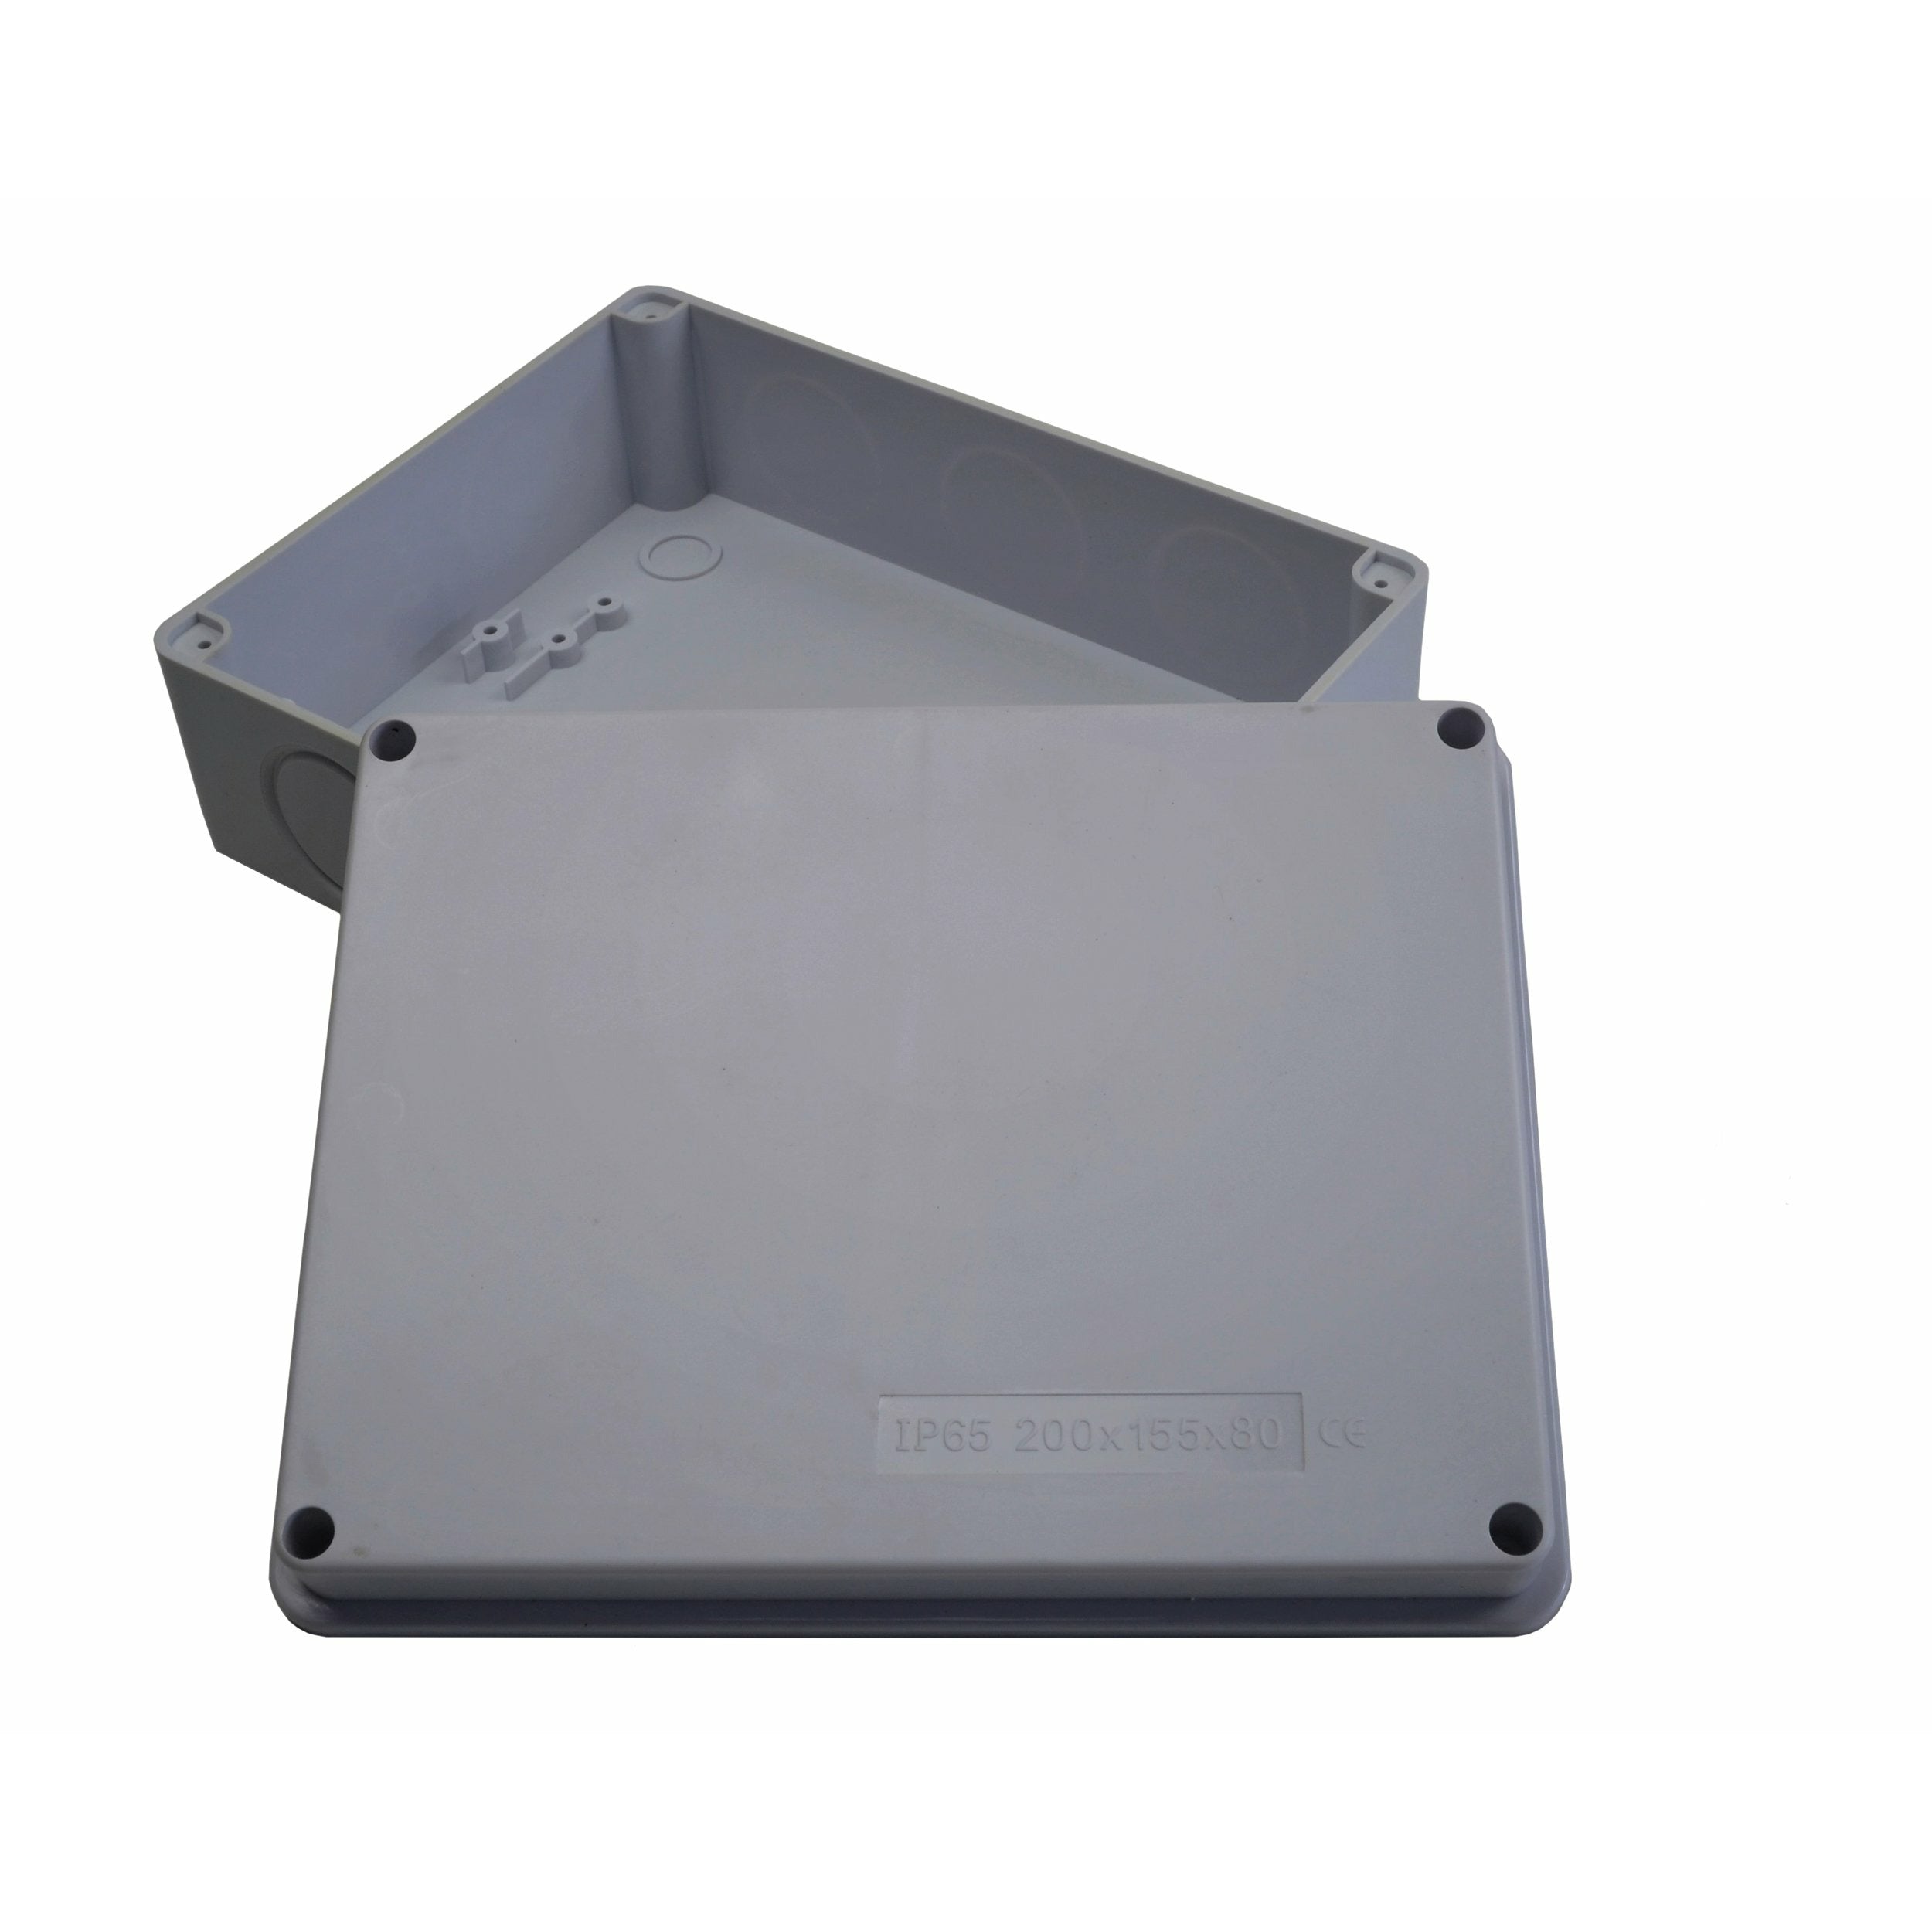 200x155x80 mm no grommet IP65 Waterproof Junction Box